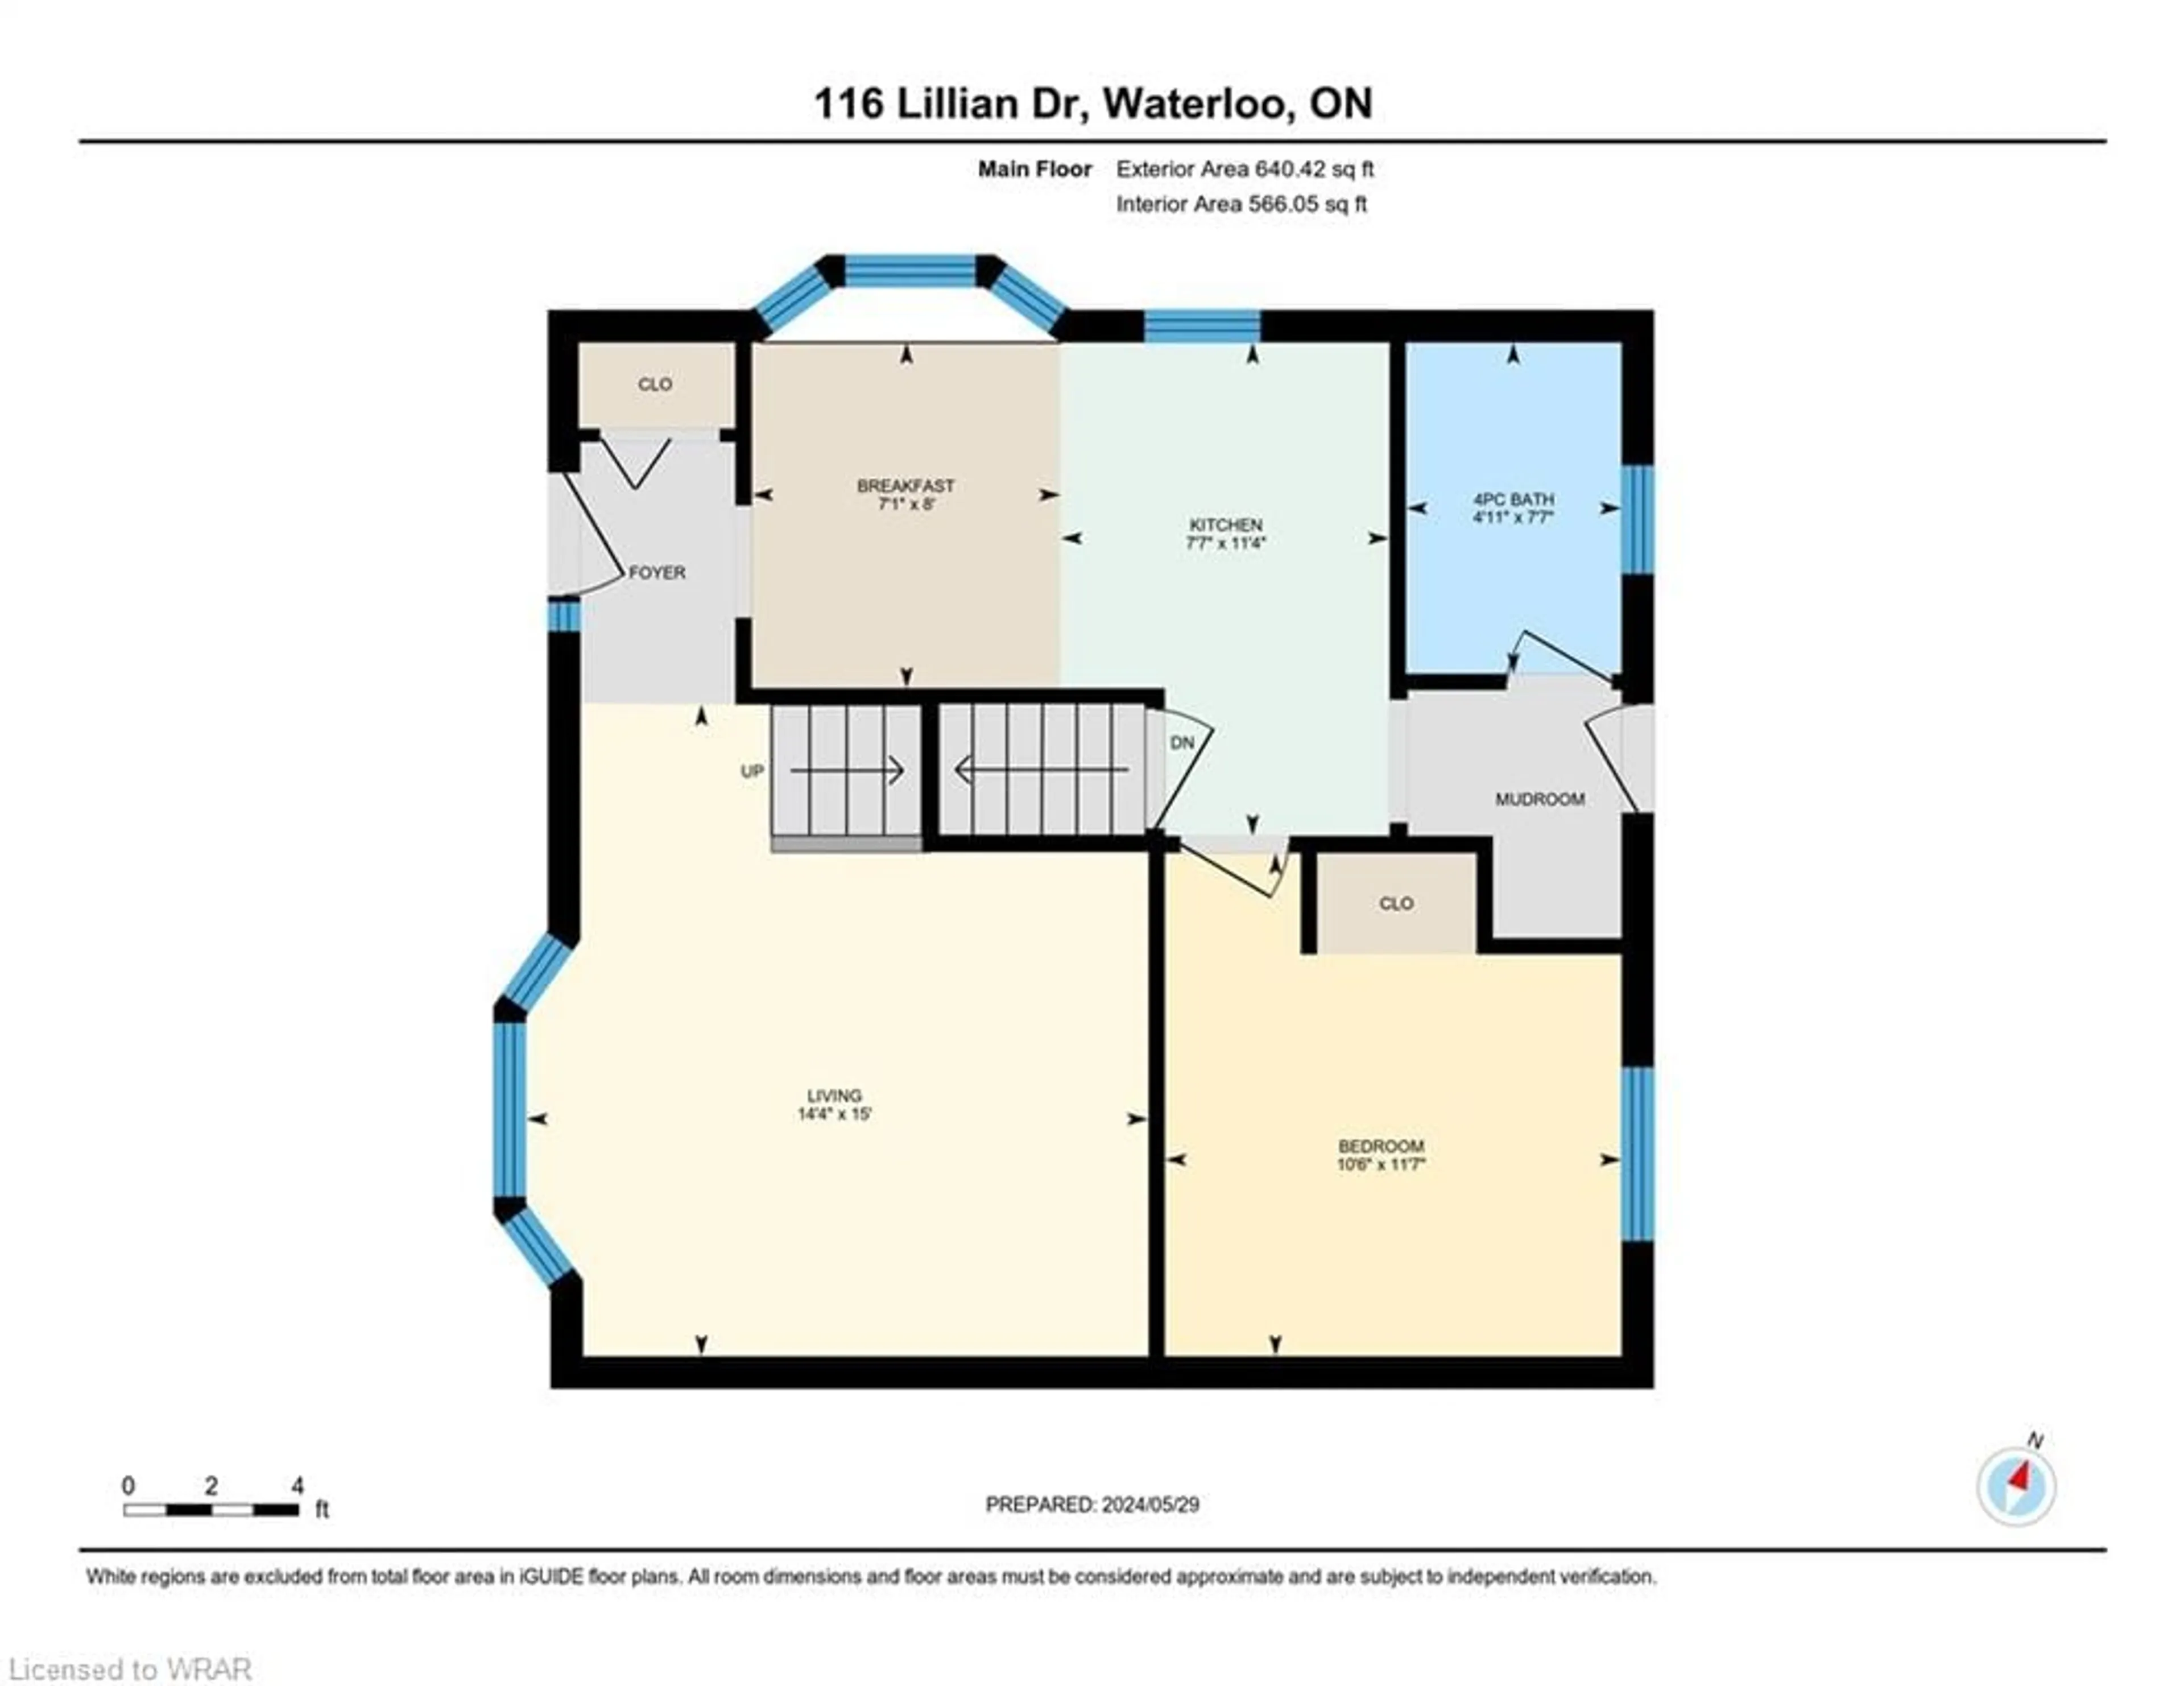 Floor plan for 116 Lillian Dr, Waterloo Ontario N2J 4J9